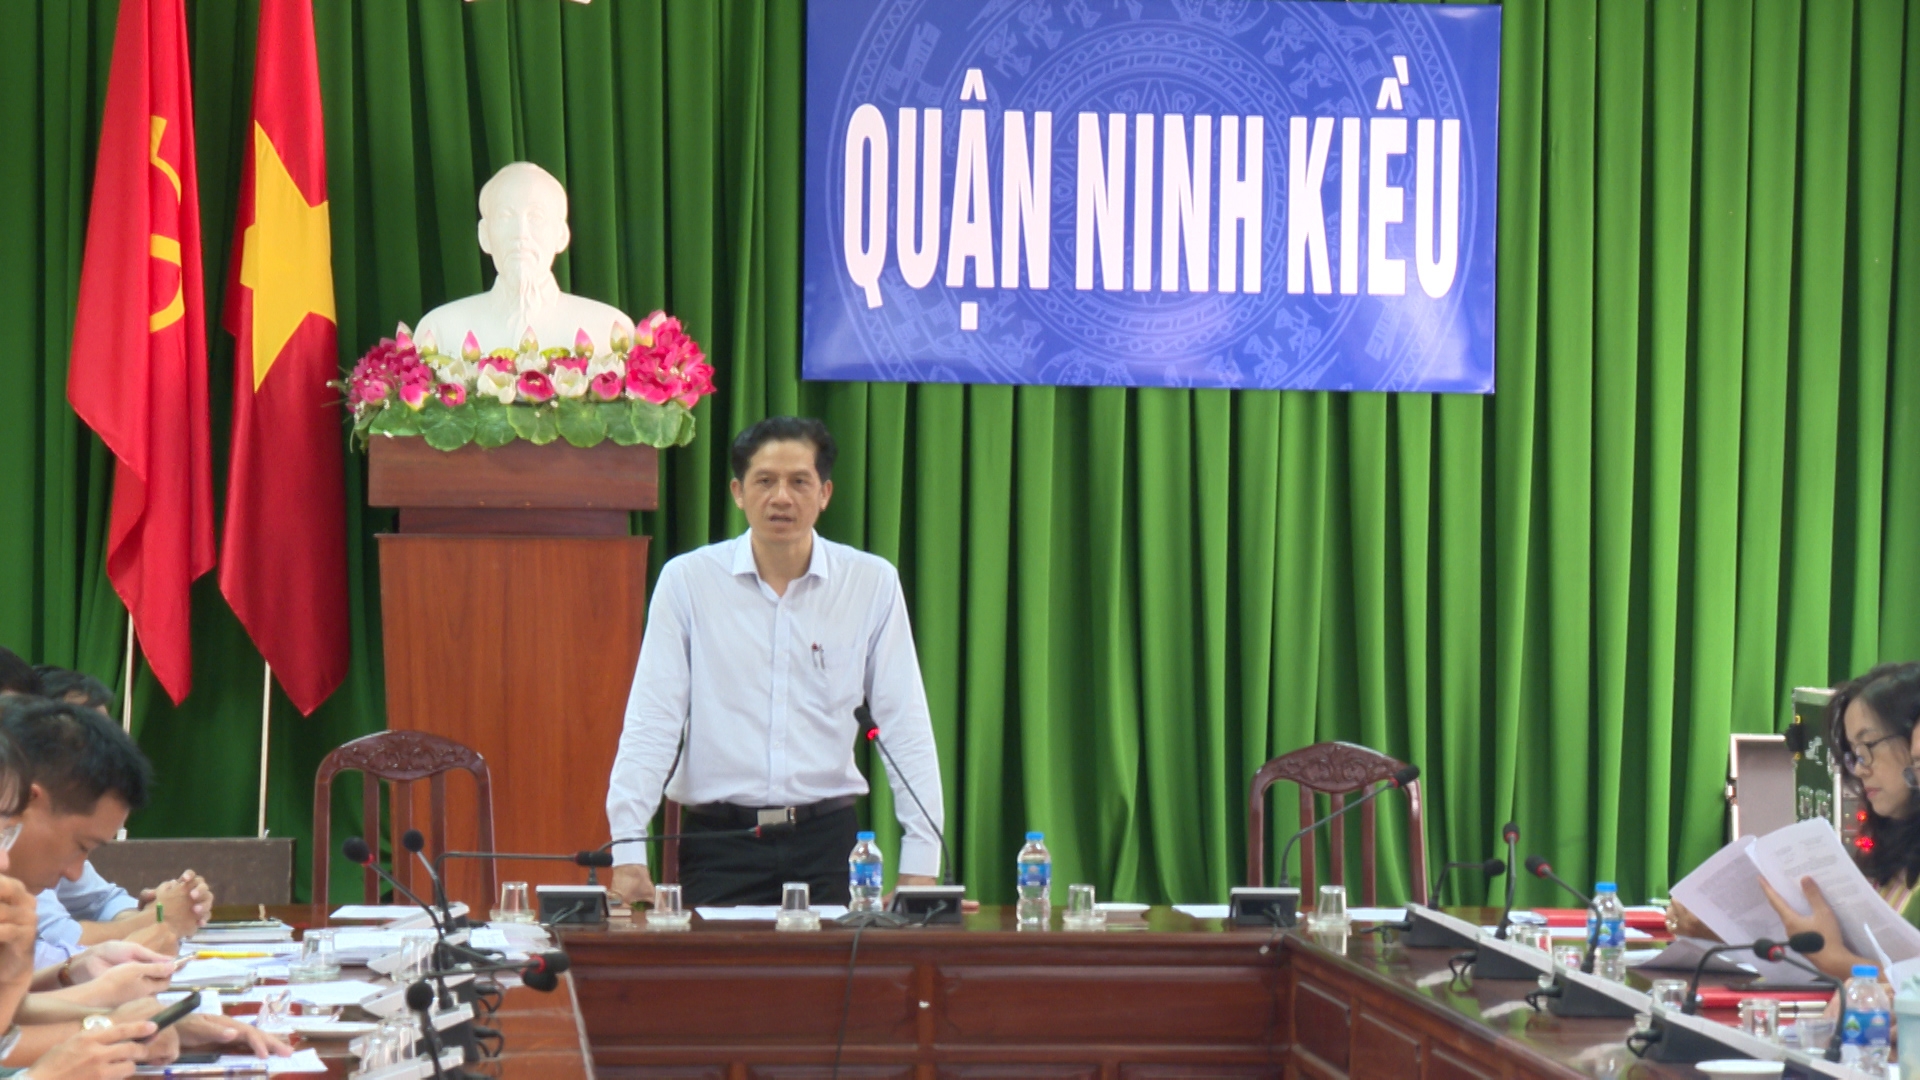 Ông Huỳnh Trung Trứ, chủ tịch UBND quận Ninh Kiều phát biểu tại hội nghị